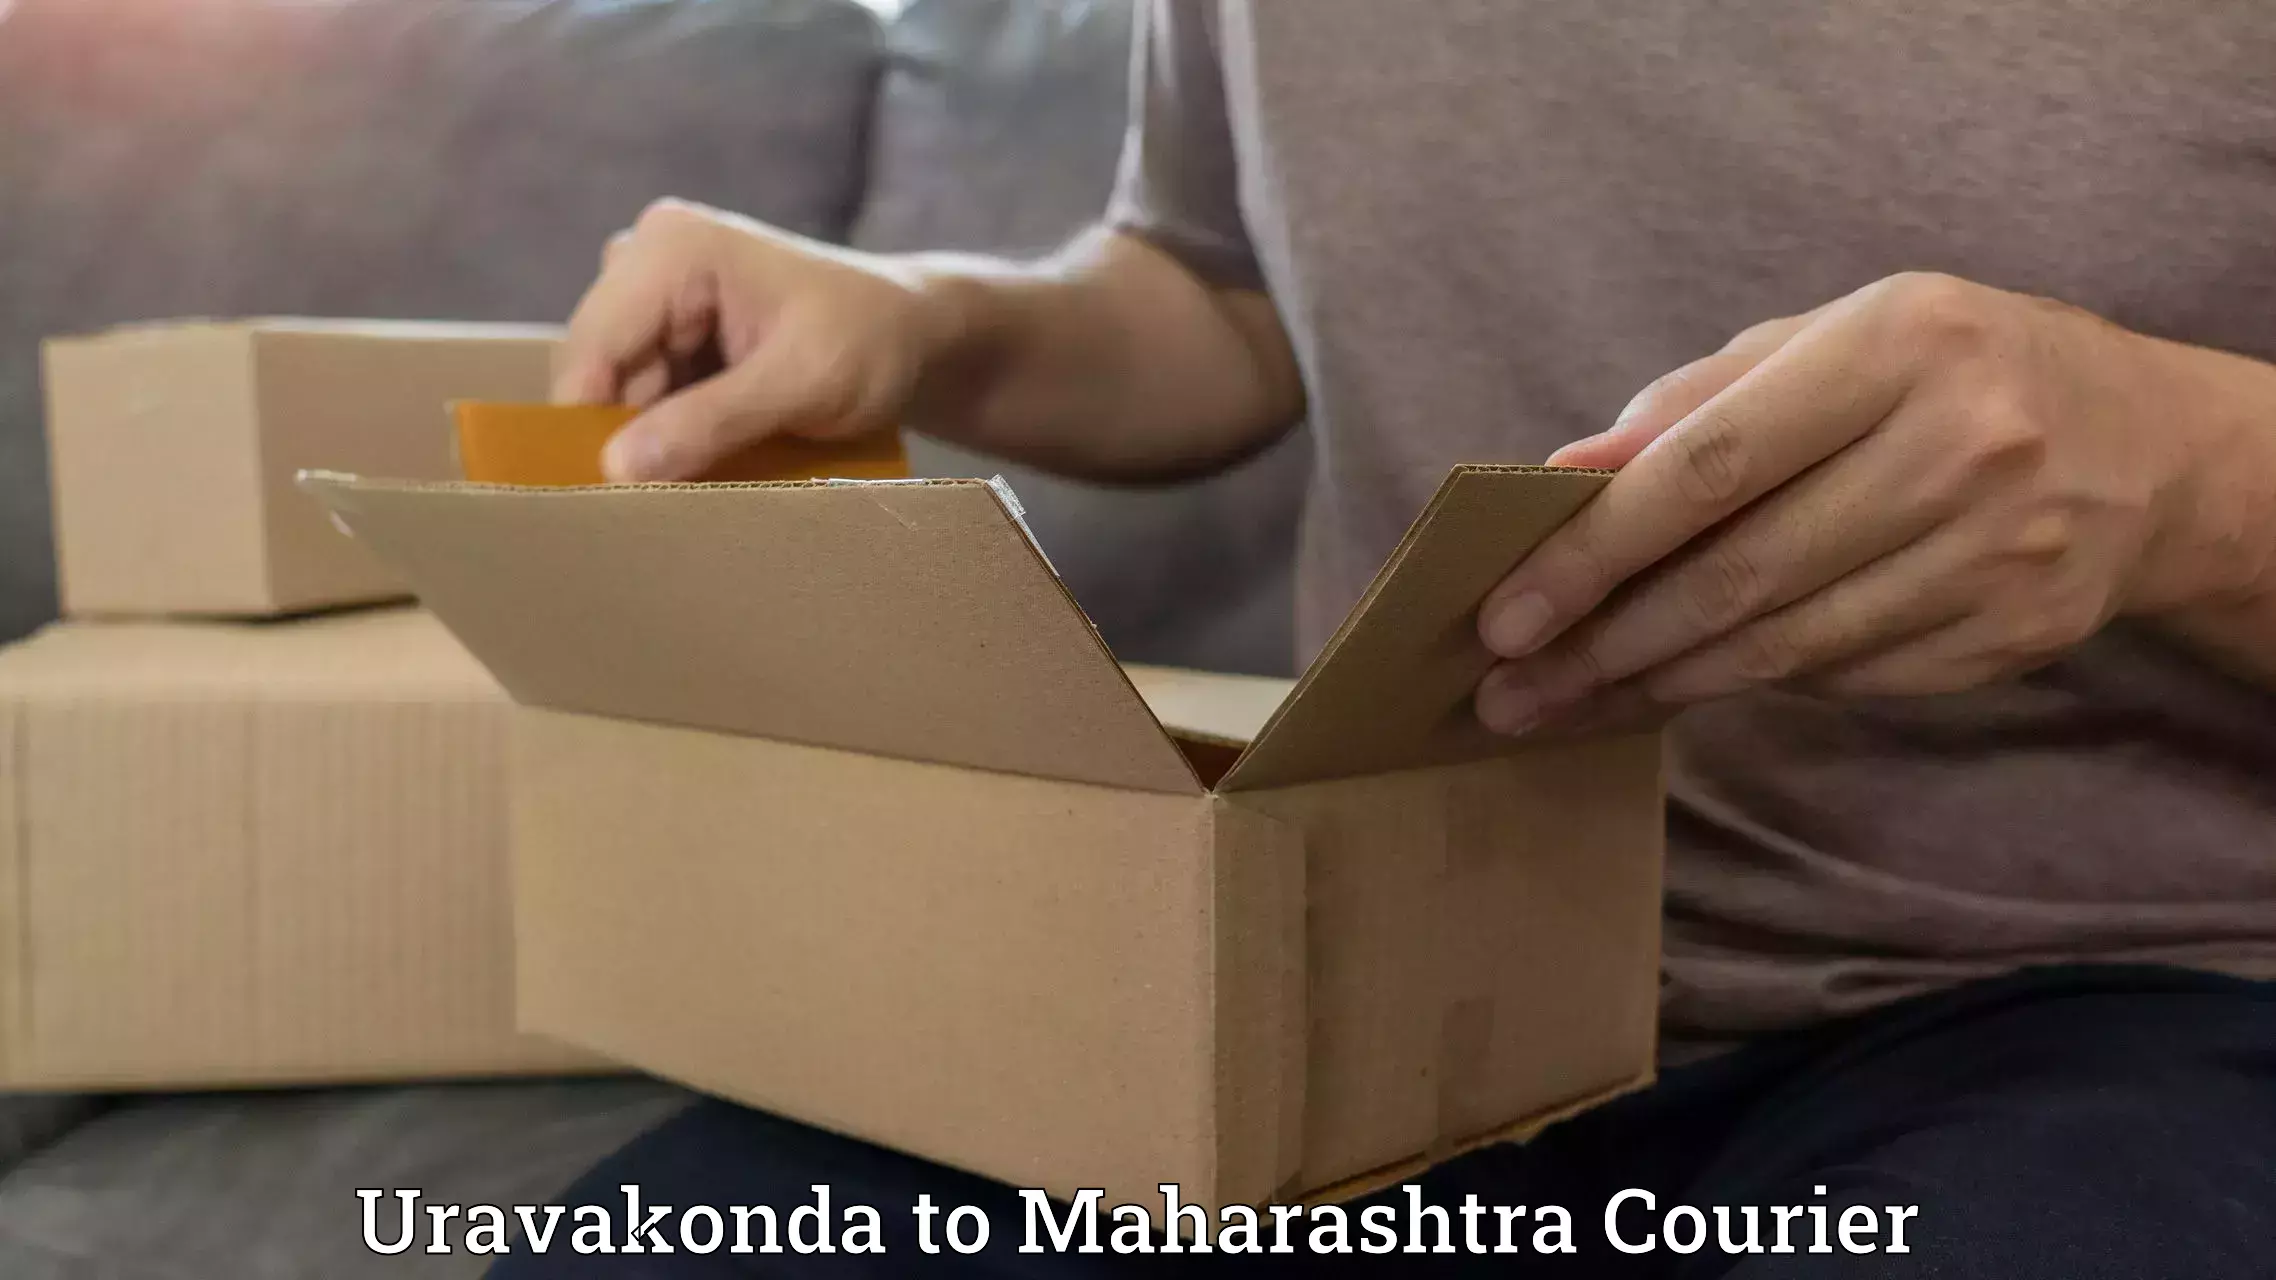 Multi-service courier options Uravakonda to DY Patil Vidyapeeth Mumbai